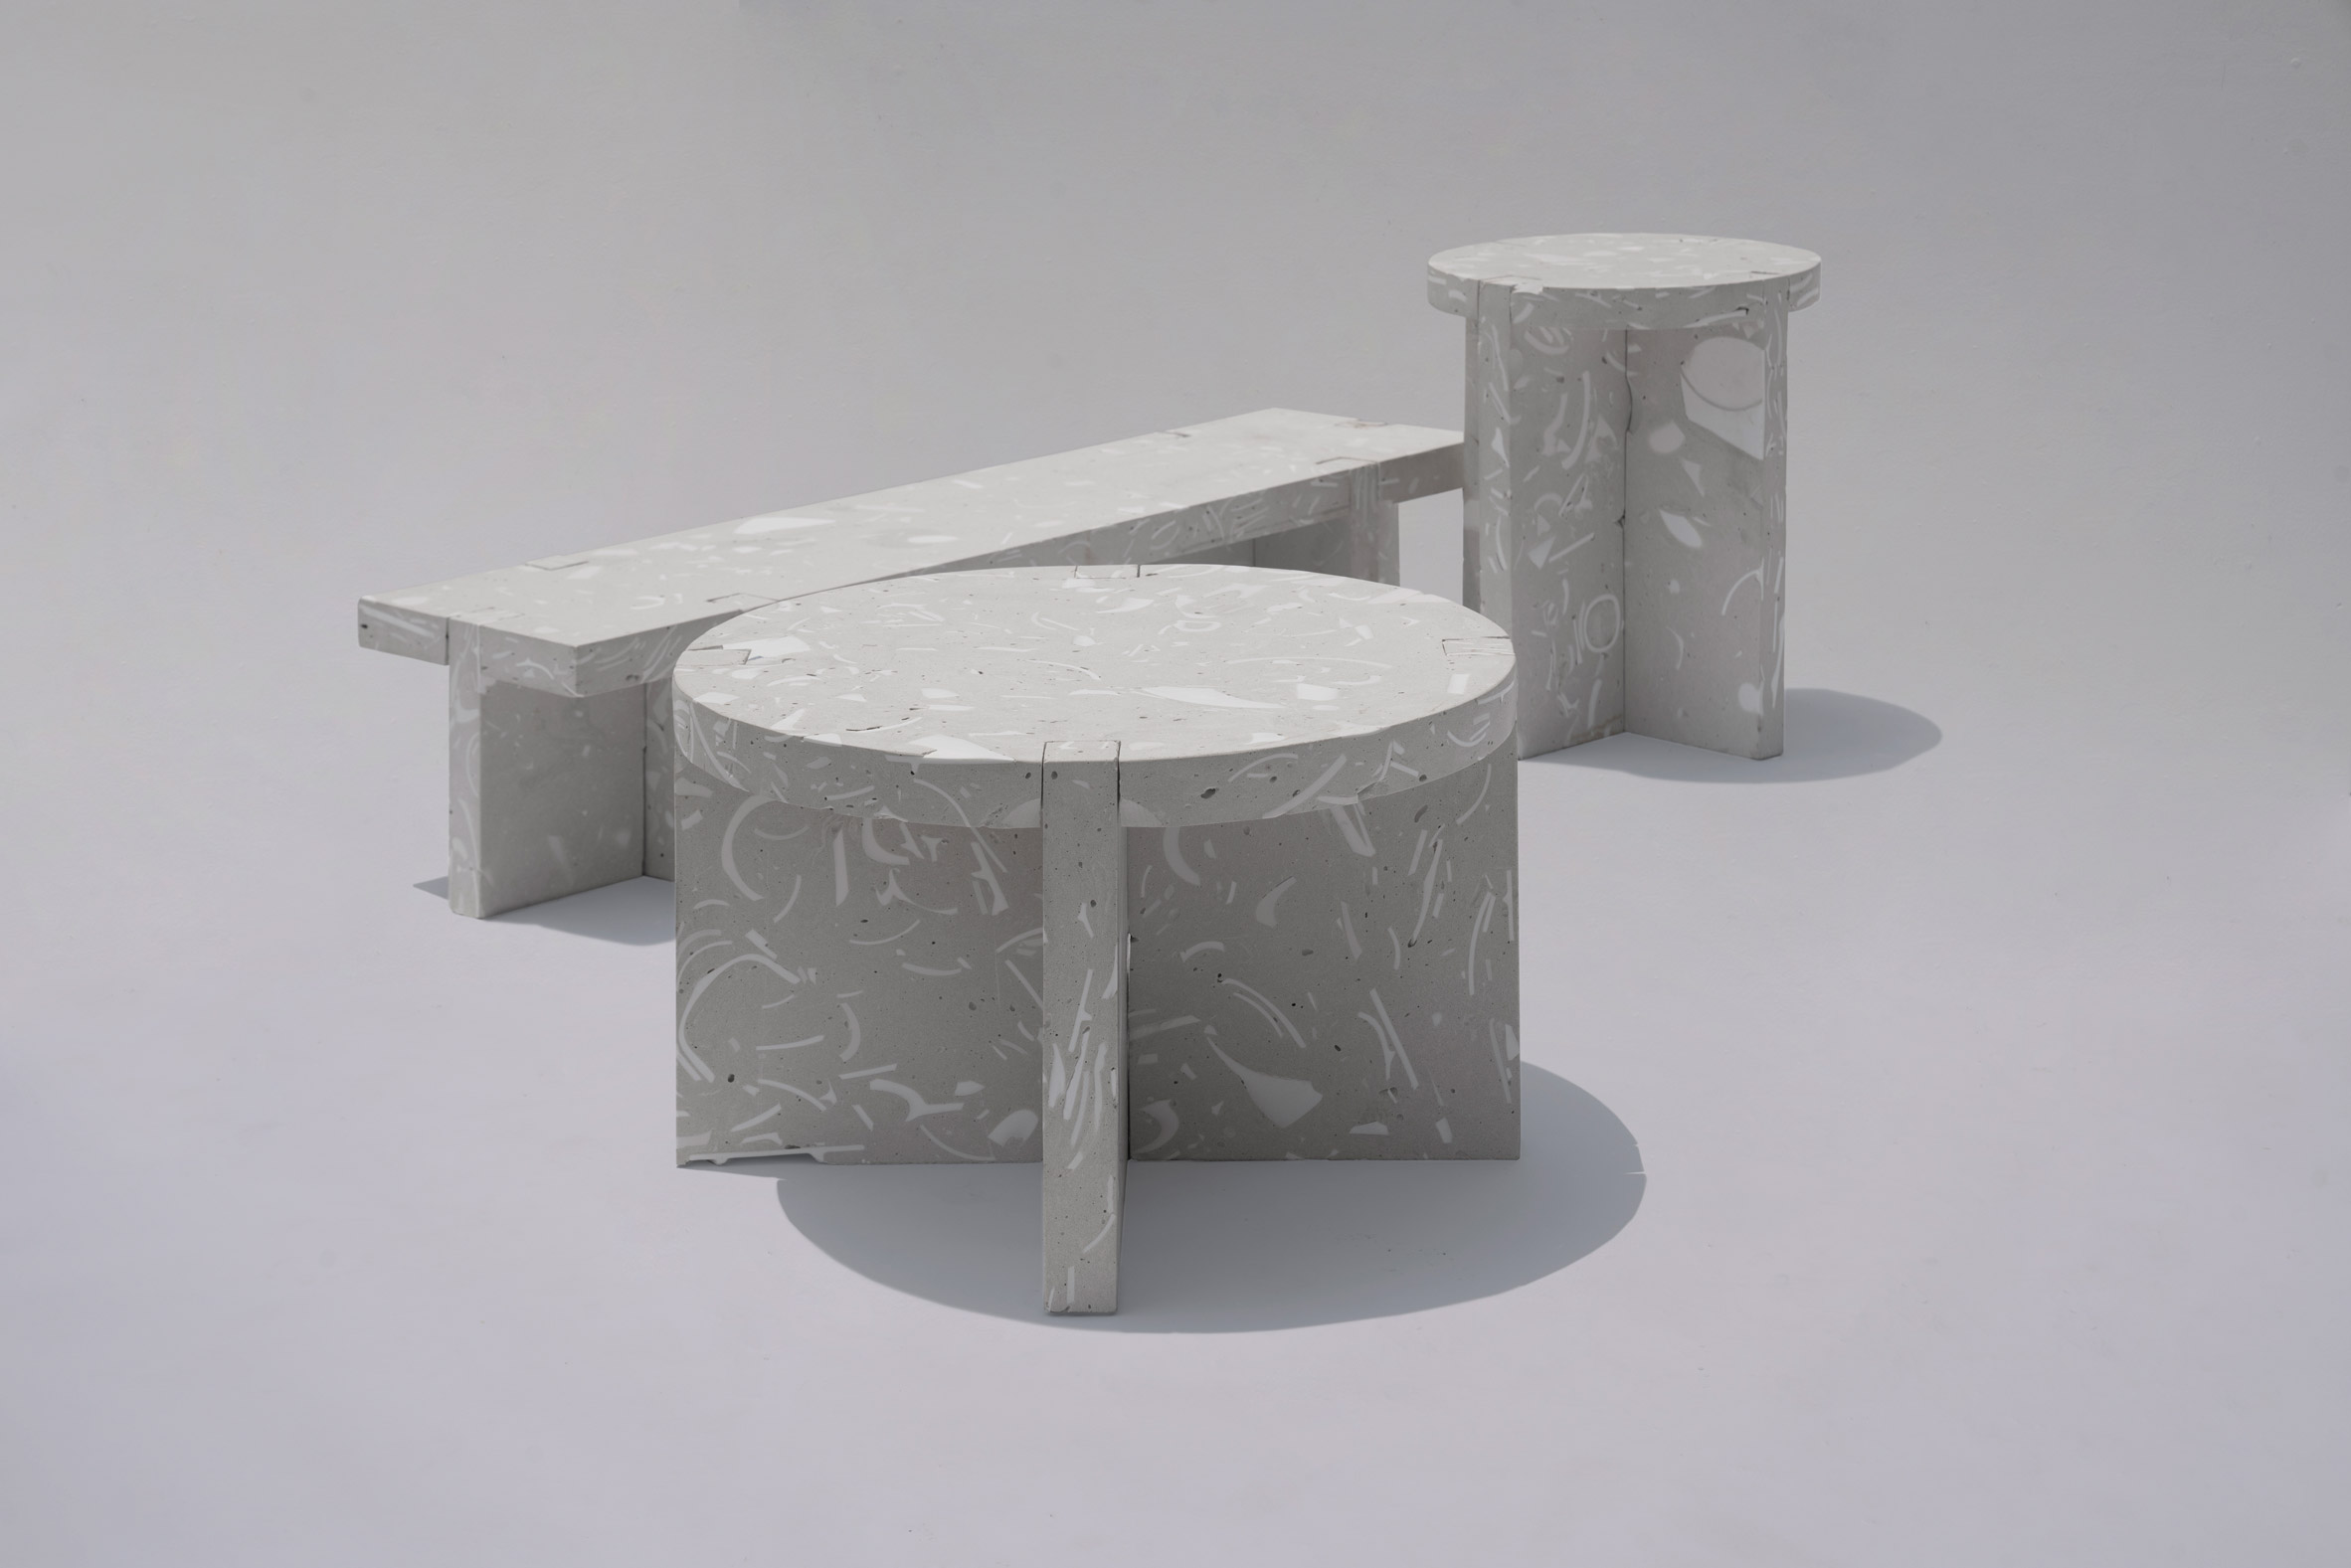 Wreck furniture by Bentu design